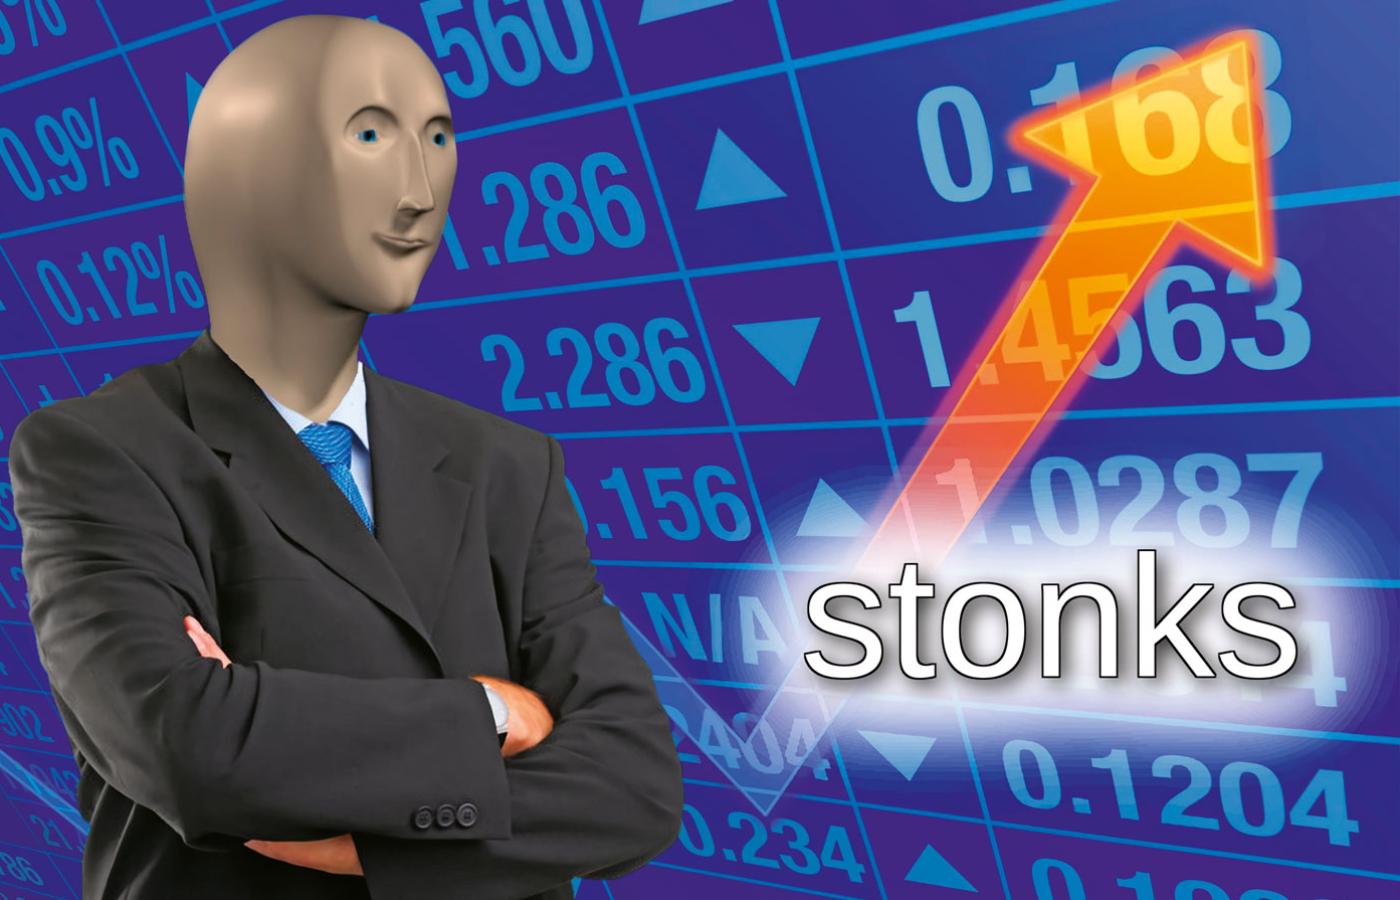 Meme Man, symbol memowych inwestorów, a stonks to w ich języku połączenie stocks, akcji, i stonk, ostrzału artyleryjskiego.